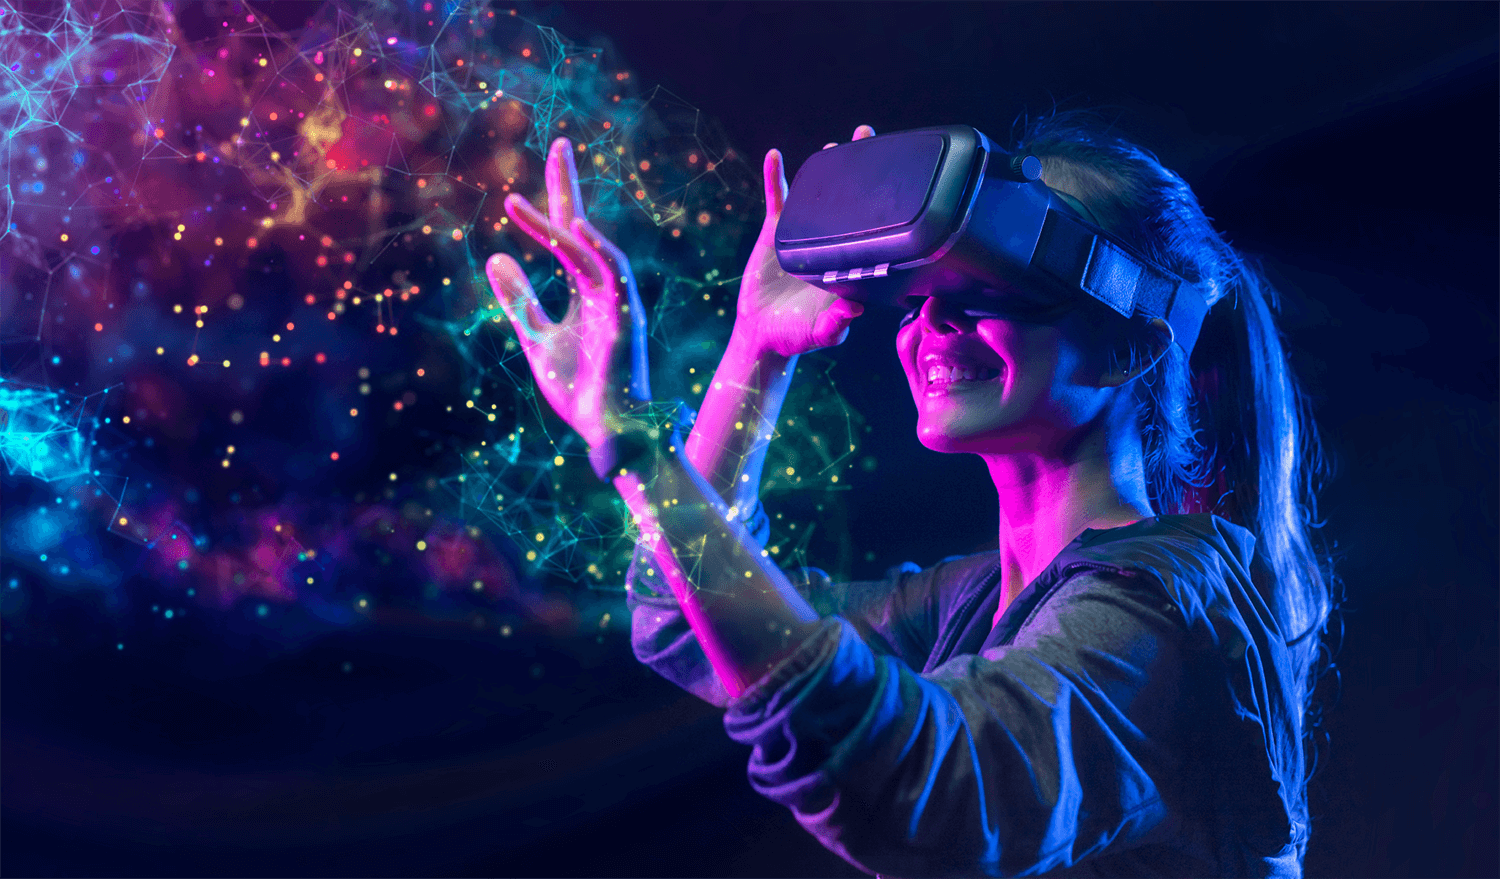 图片展示一位女性佩戴虚拟现实头盔，伸手触摸光影交错的数字空间，表情愉悦，仿佛置身于高科技虚构世界。